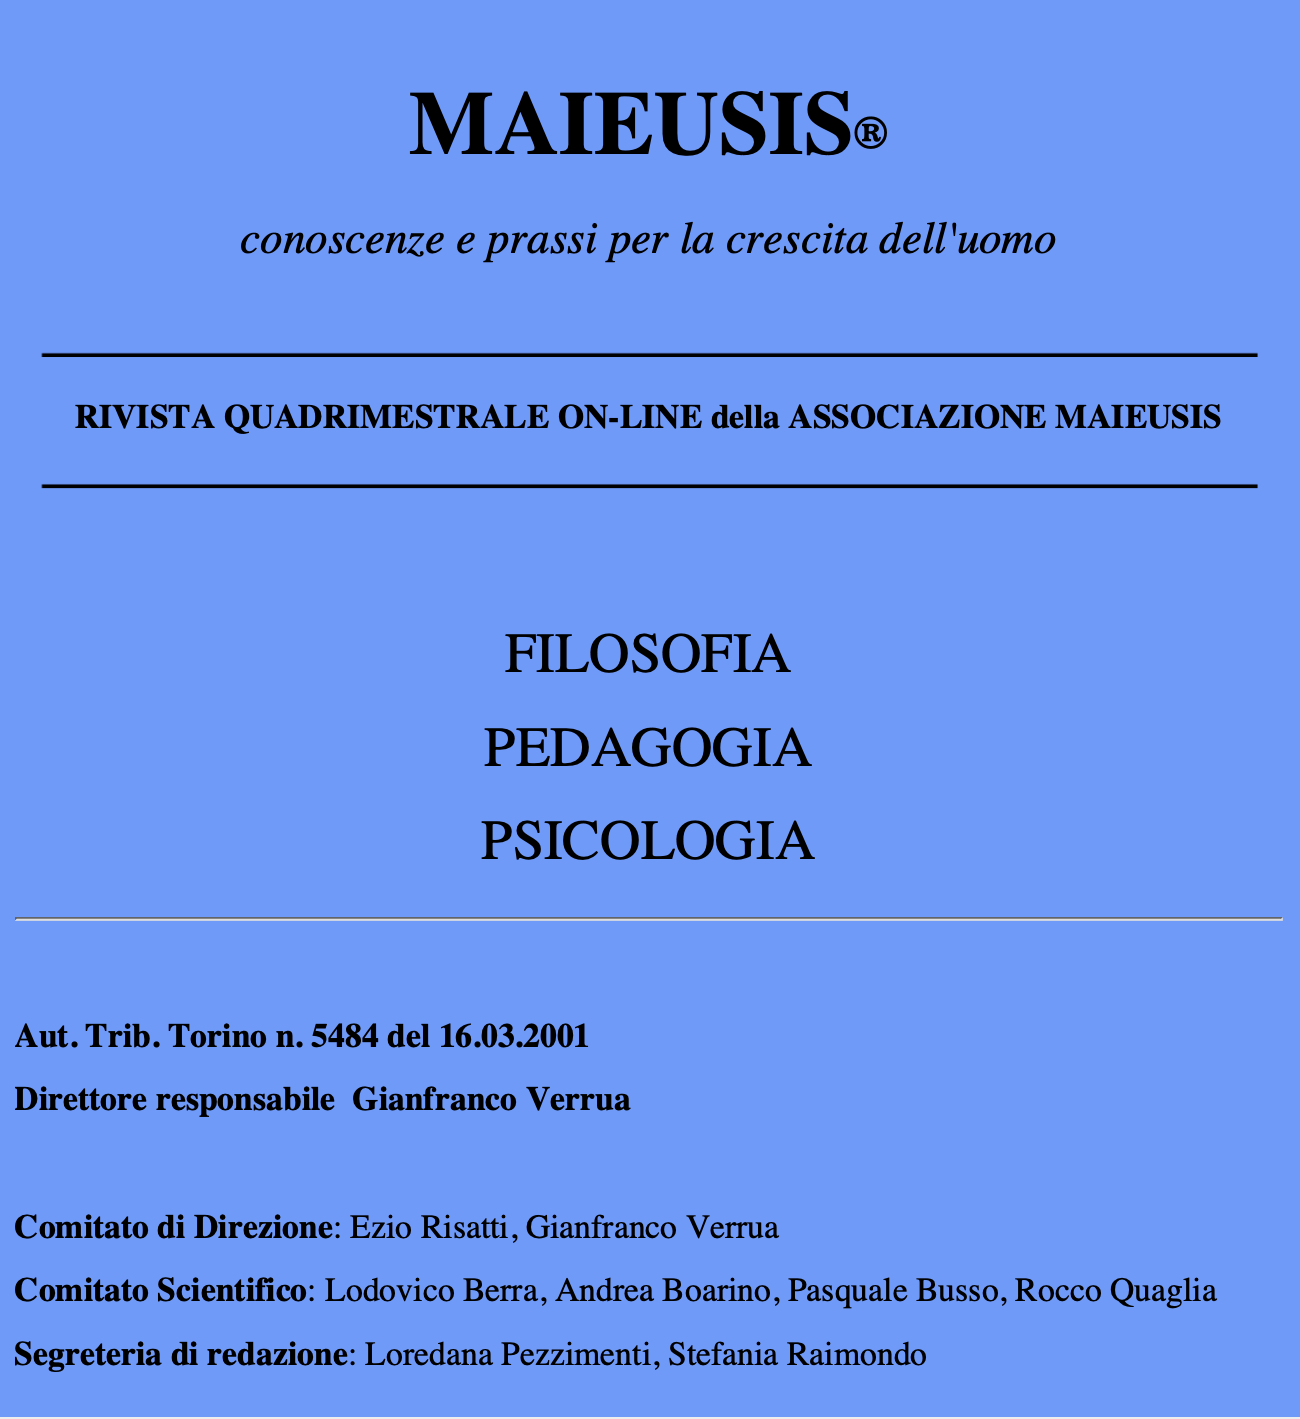 Maieusis e Societa italiana di Counseling Filosofico 